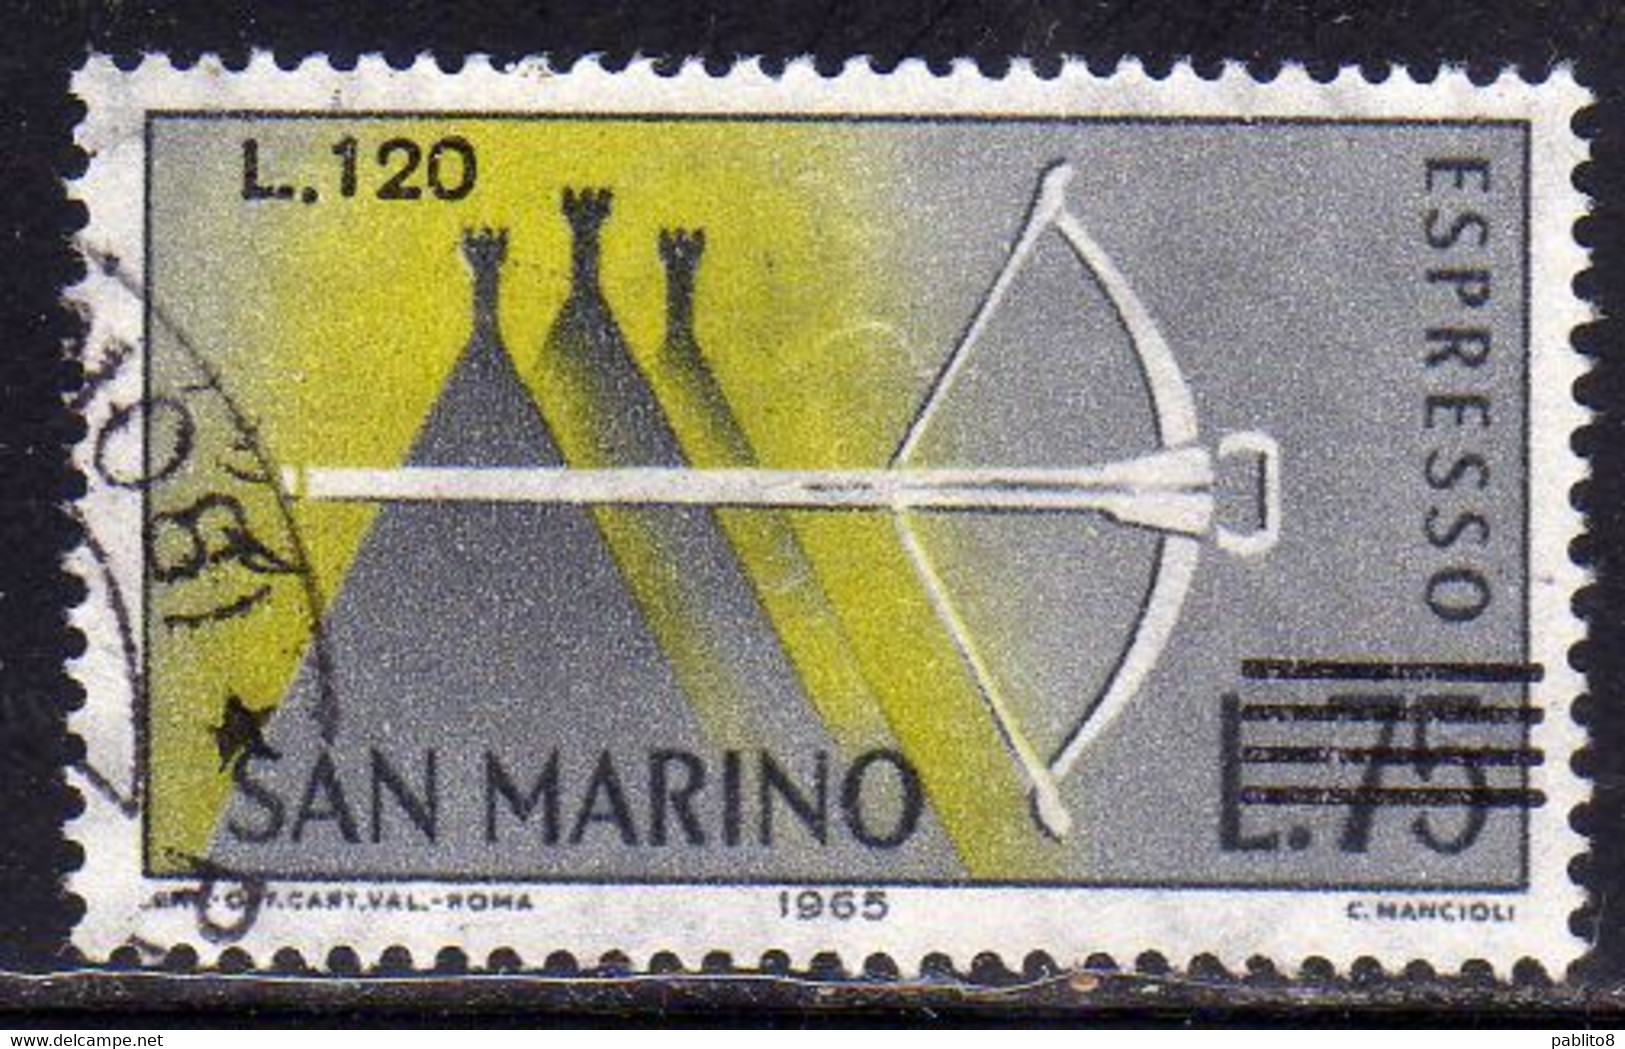 REPUBBLICA DI SAN MARINO 1965 ESPRESSI SPECIAL DELIVERY BALESTRA SOPRASTAMPATO SURCHARGED LIRE 120 SU 75 USATO USED - Exprespost